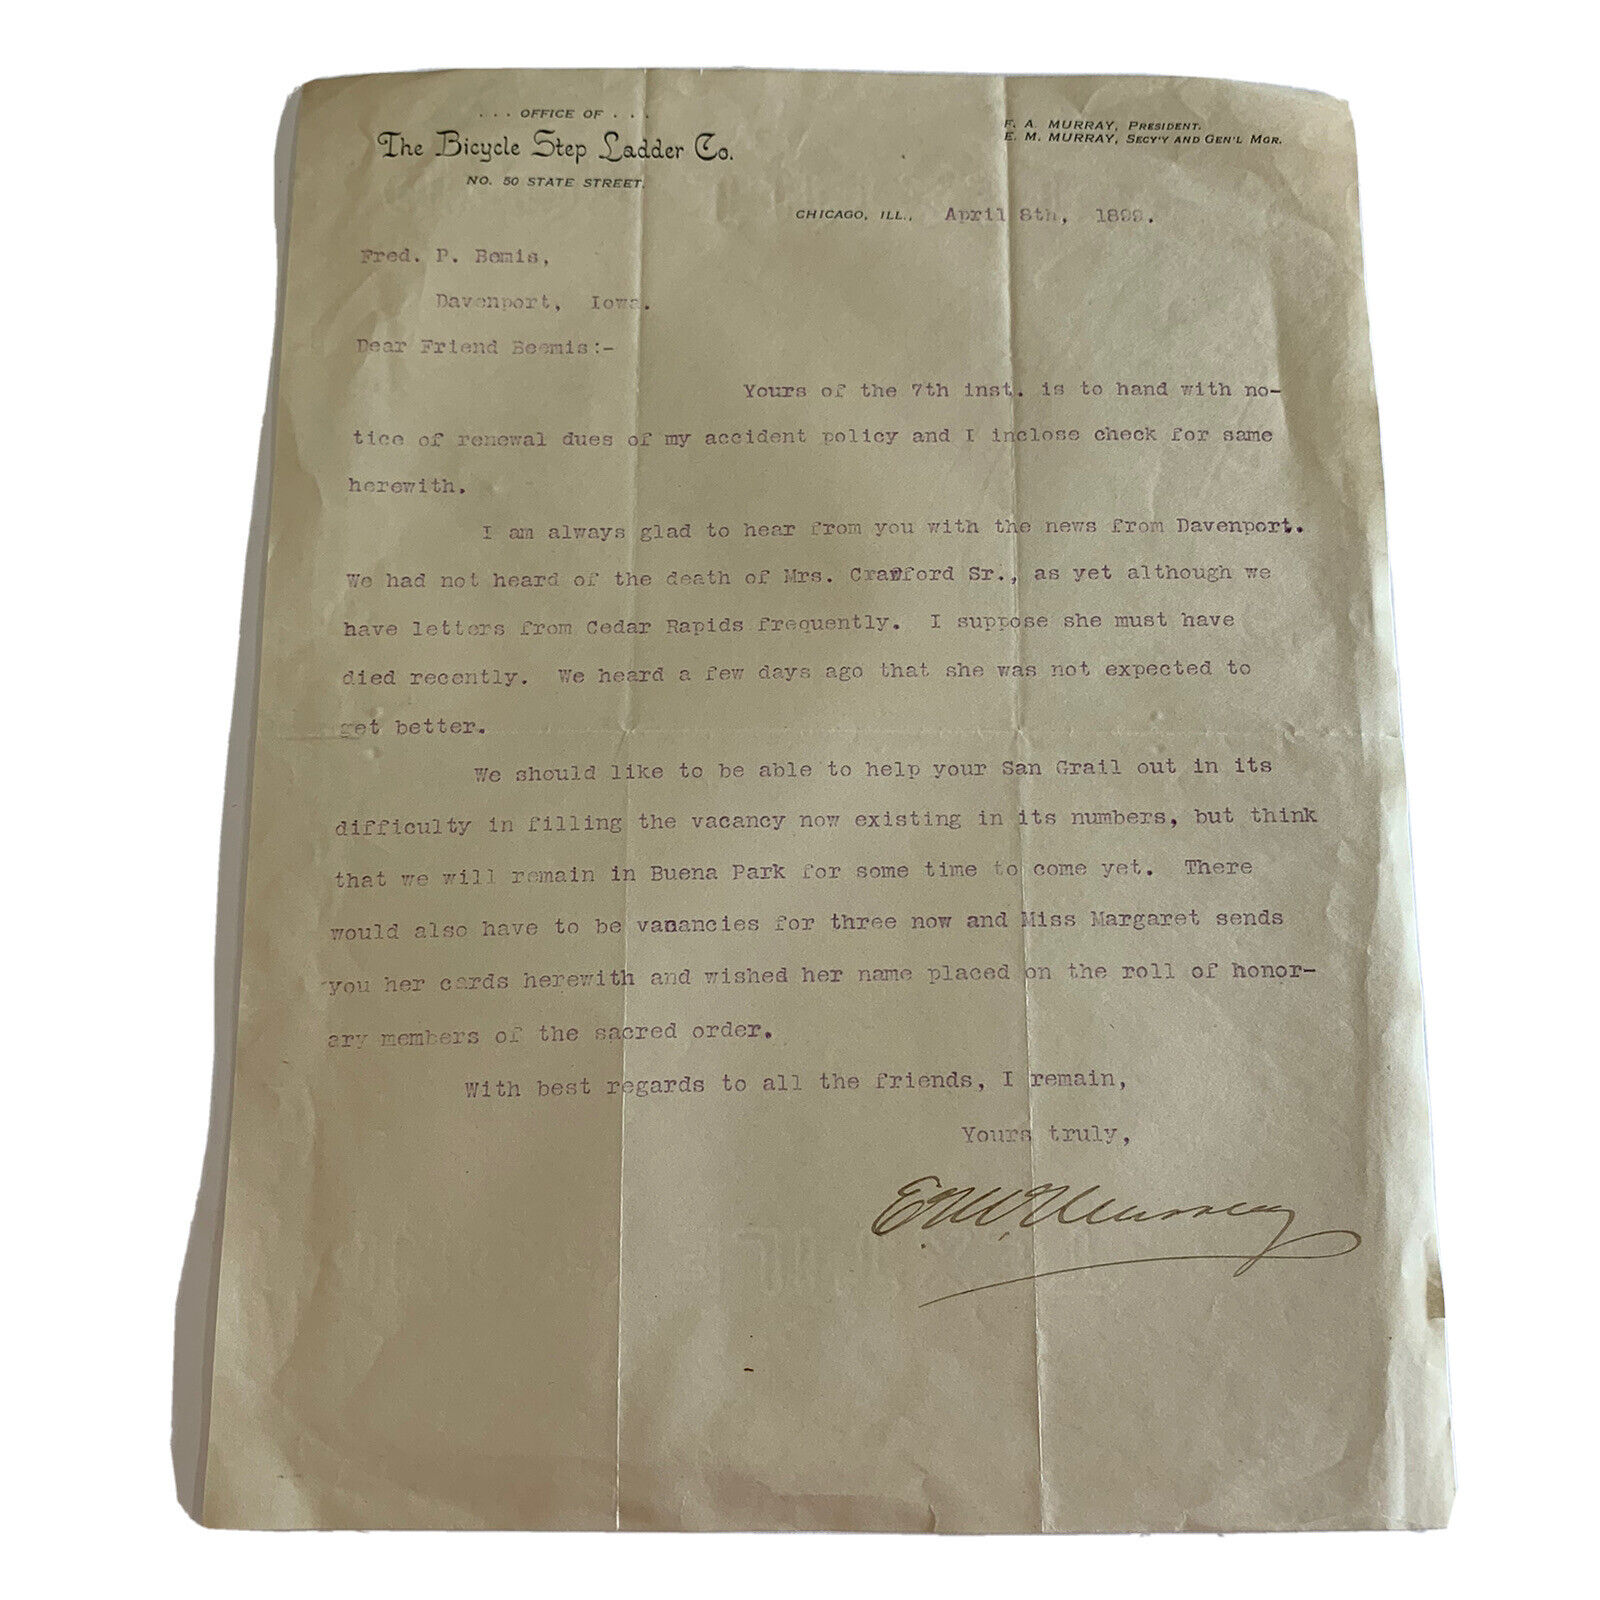 1899 Bicycle Step Ladder Co. Original Letter On Textile Bond Paper Vintage Rare